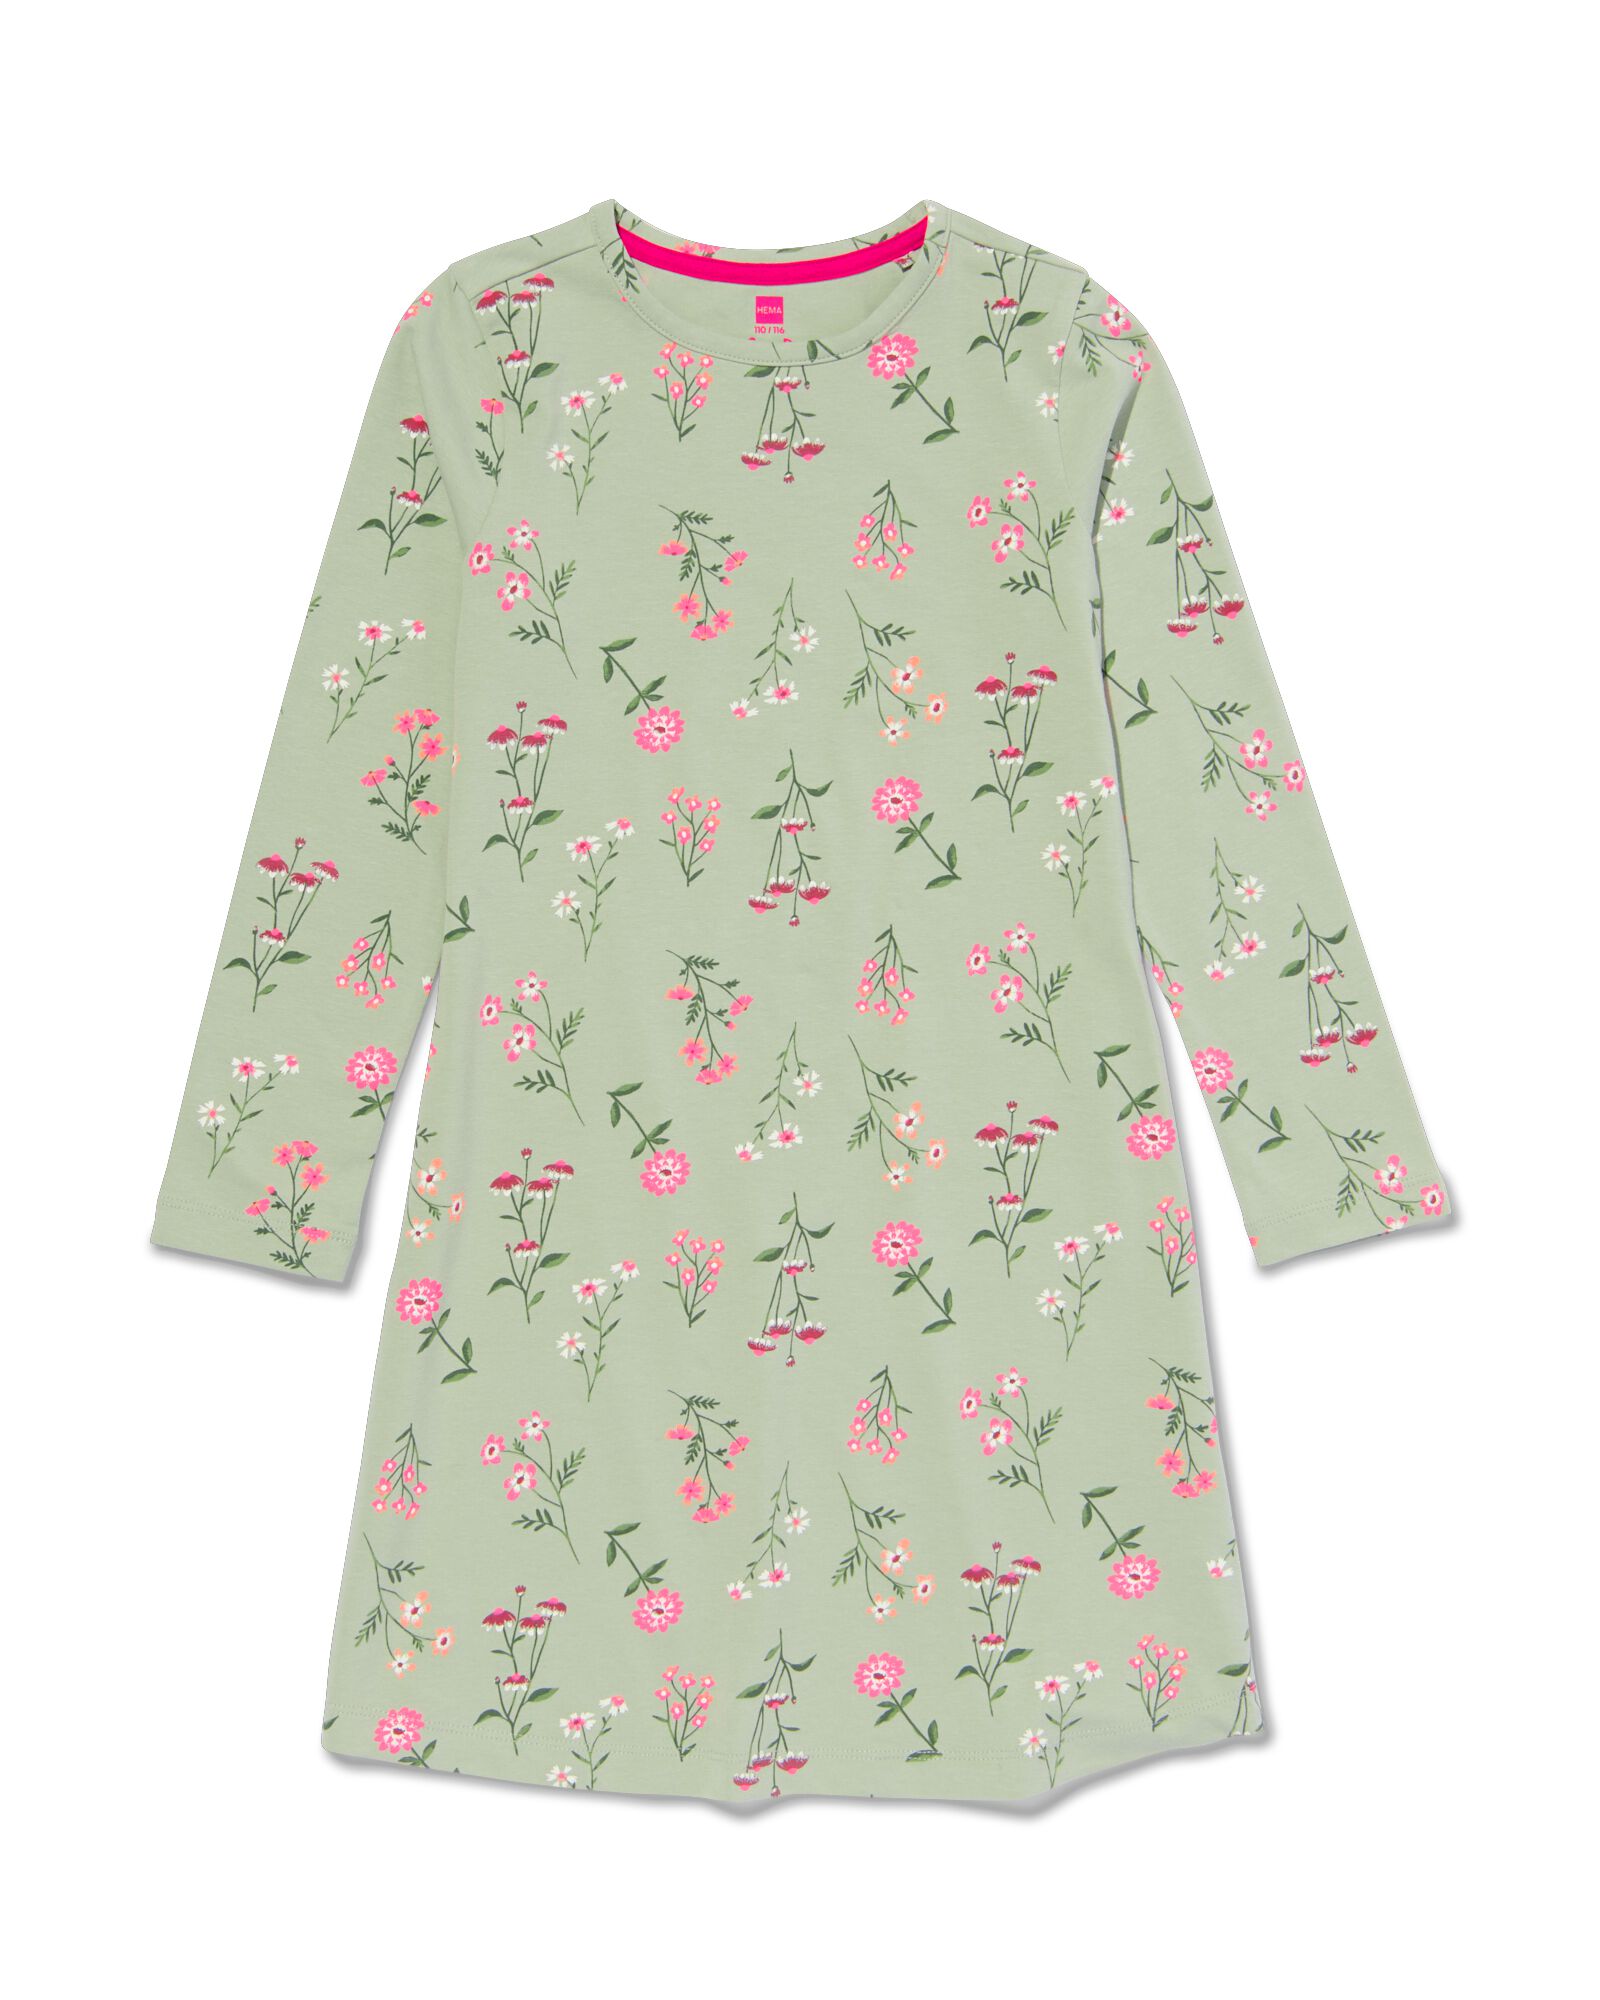 Kinder-Nachthemd mit Blumen hellgrün 110/116 - 23030783 - HEMA